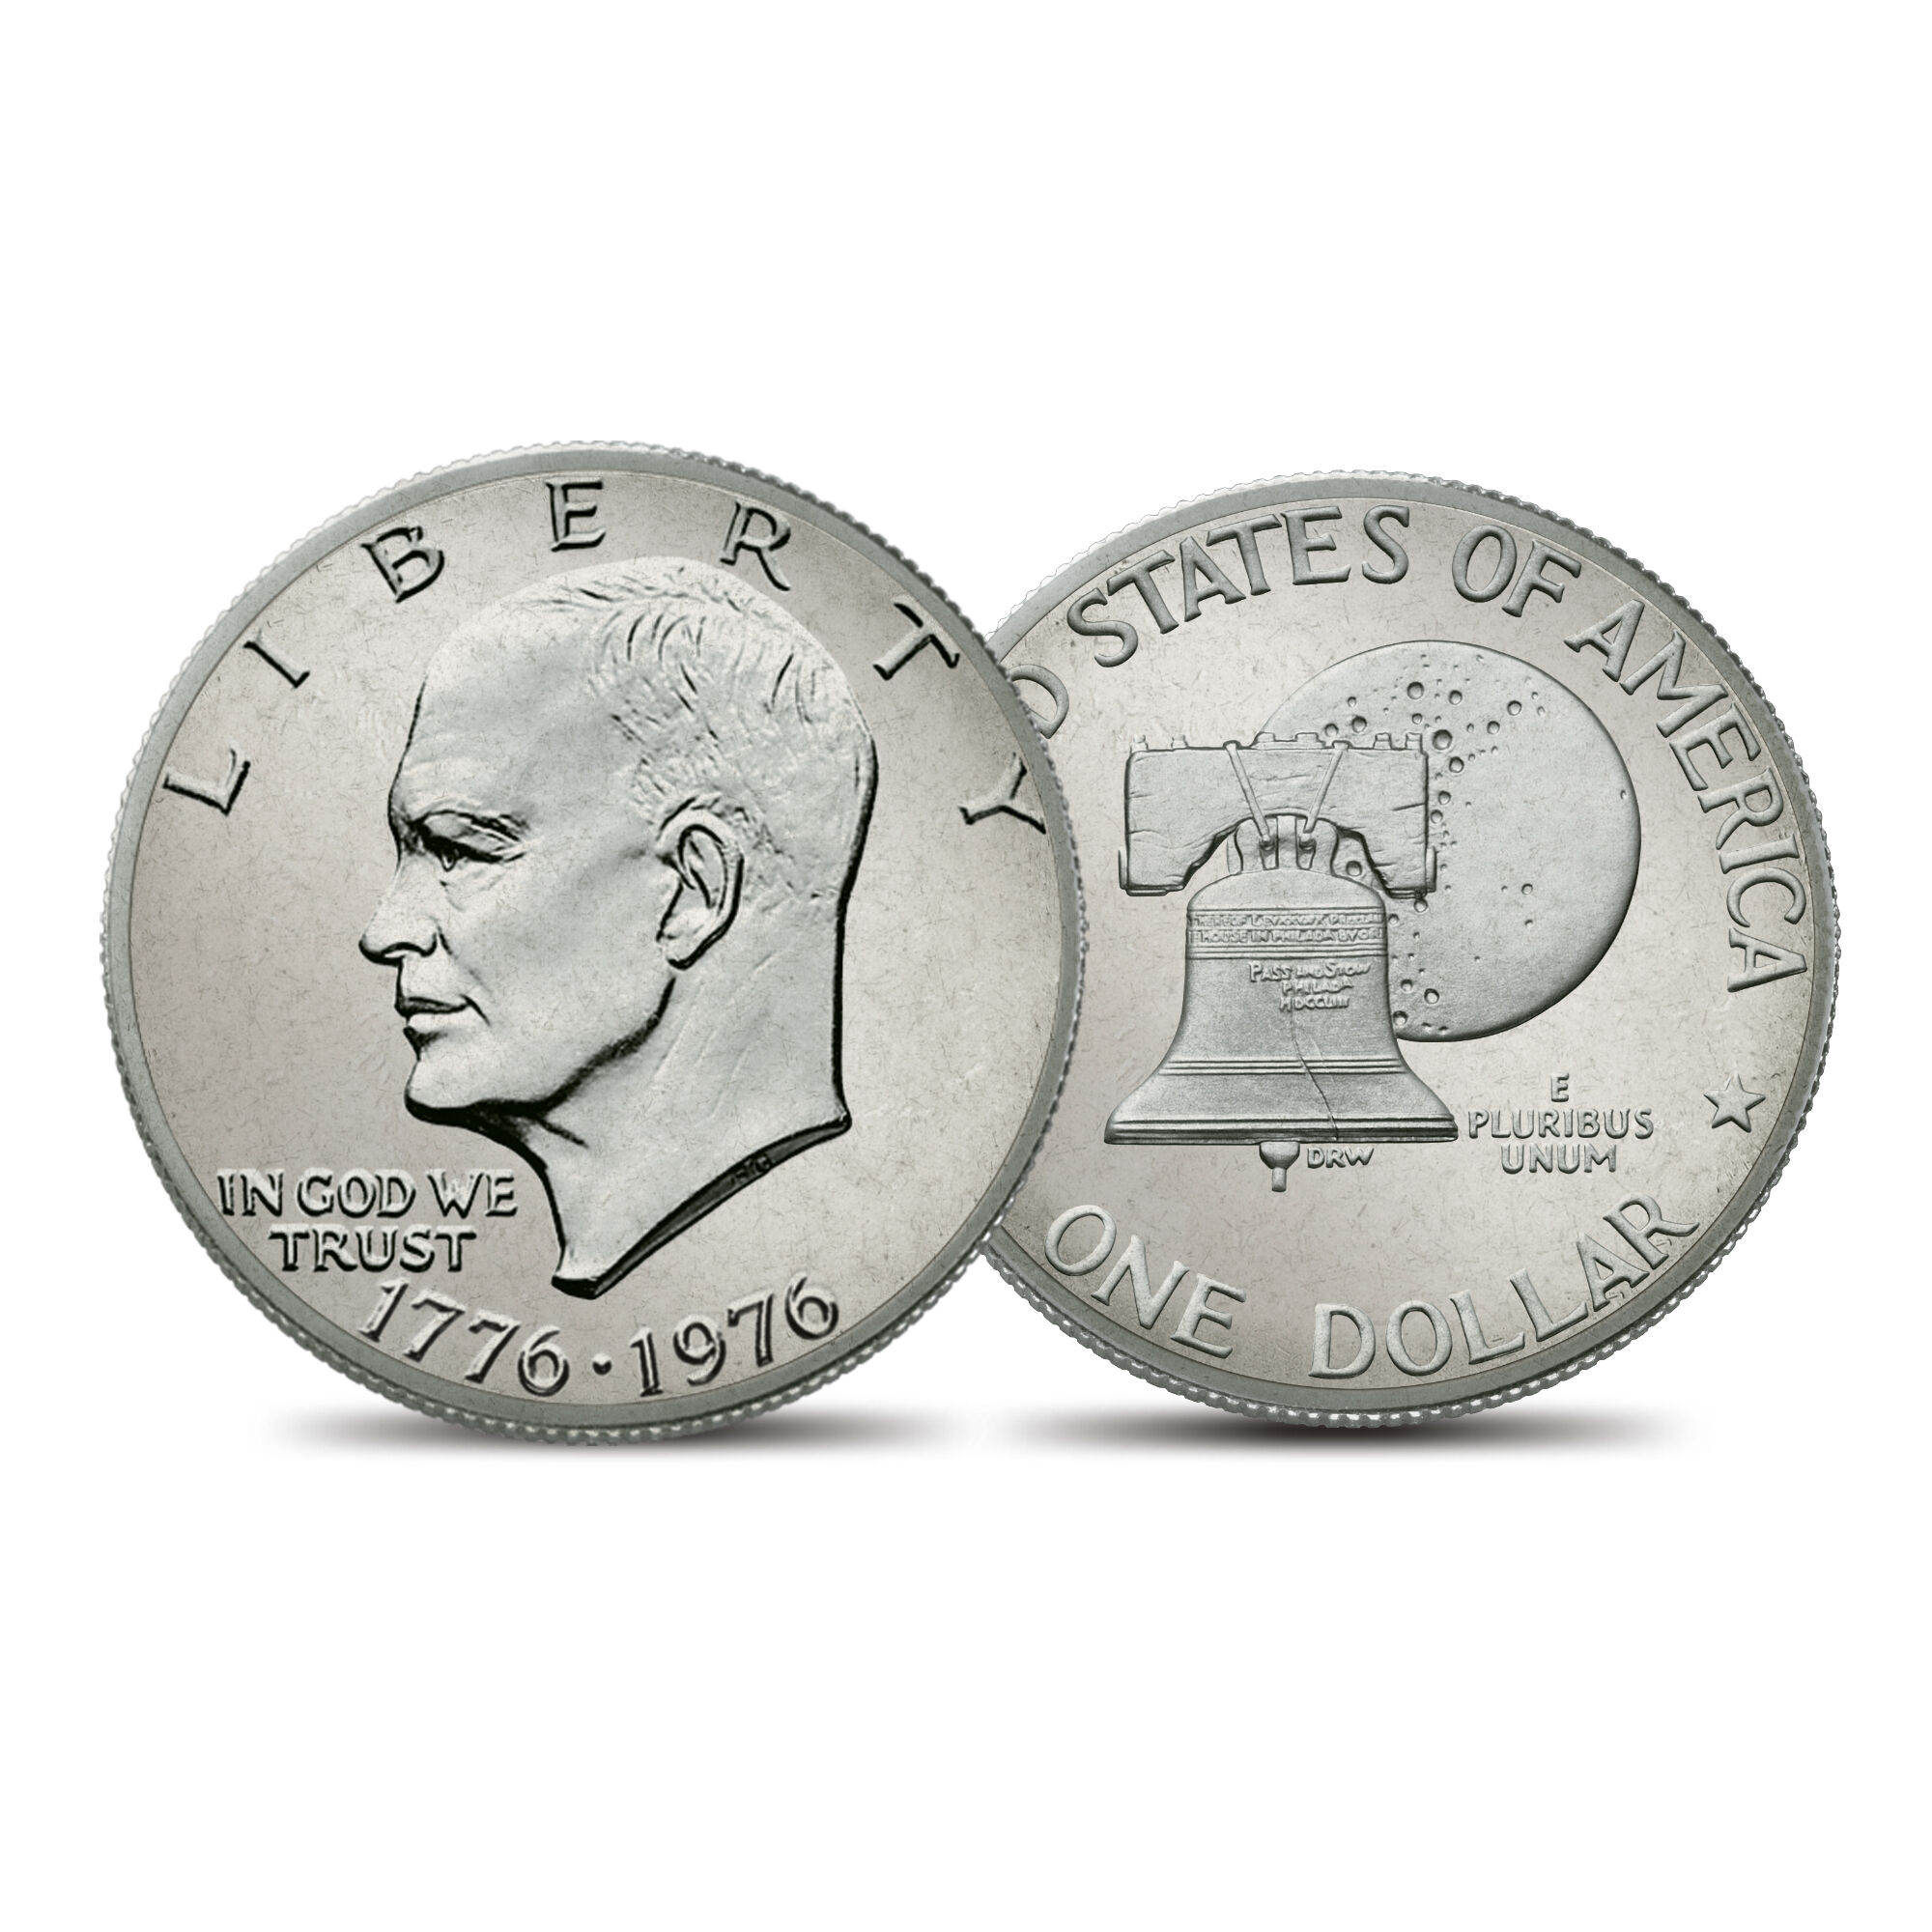 The Complete Bicentennial Mint Mark Set 4195 0056 e coineisenhowerunc